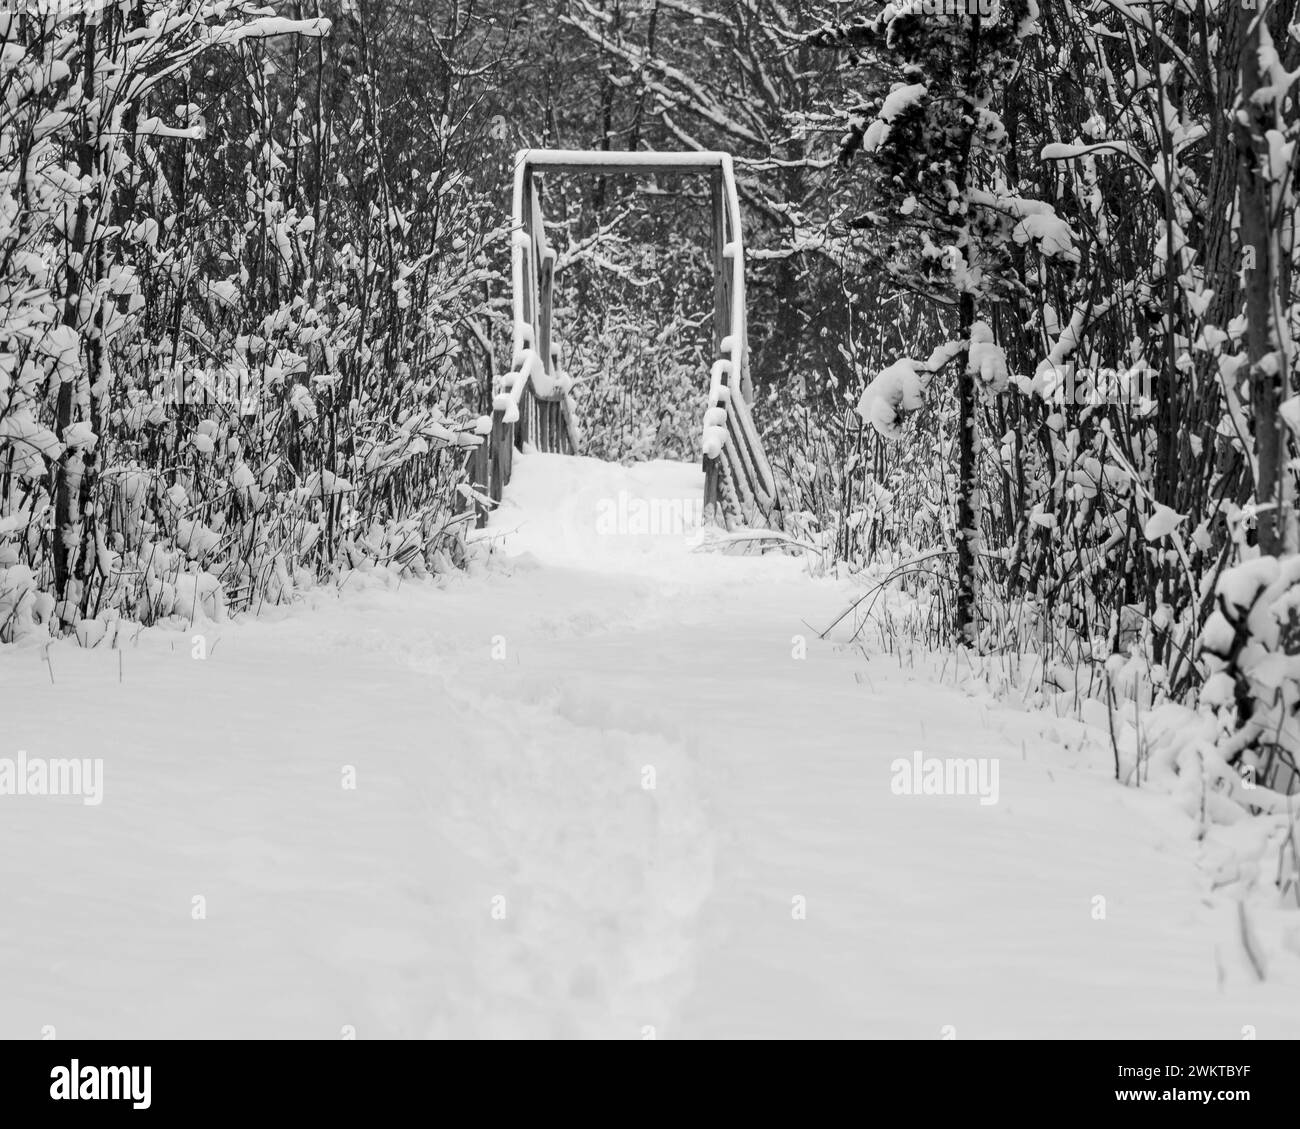 Une seule piste de pneu de vélo mtn traverse la neige fraîche et fraîche tombée sur un pont dans la zone de loisirs de Bald Mountain State, Orion Township, Michigan Banque D'Images